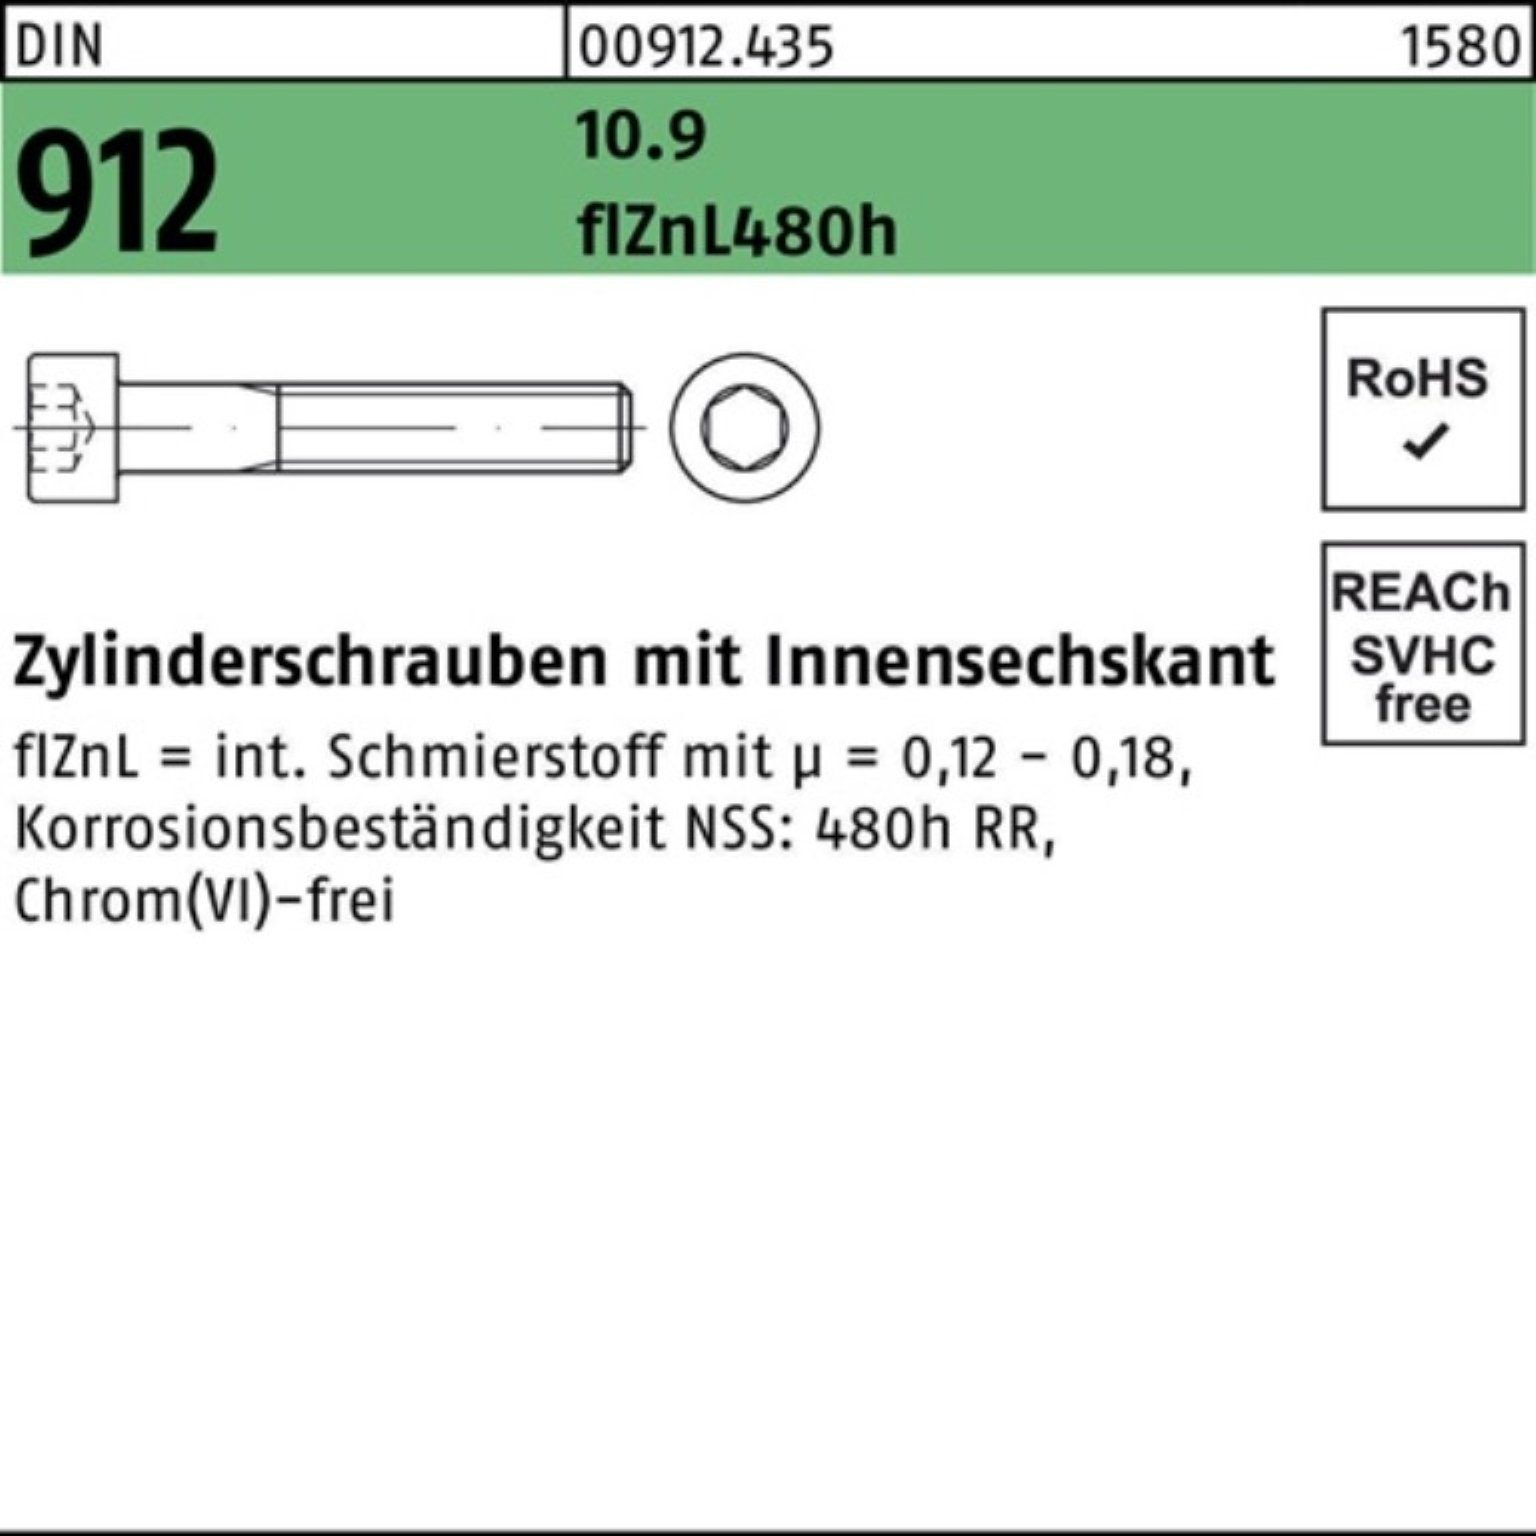 Reyher Zylinderschraube Pack 200er M8x20 flZnL/nc/x/x 10.9 912 Innen-6kt DIN Zylinderschraube